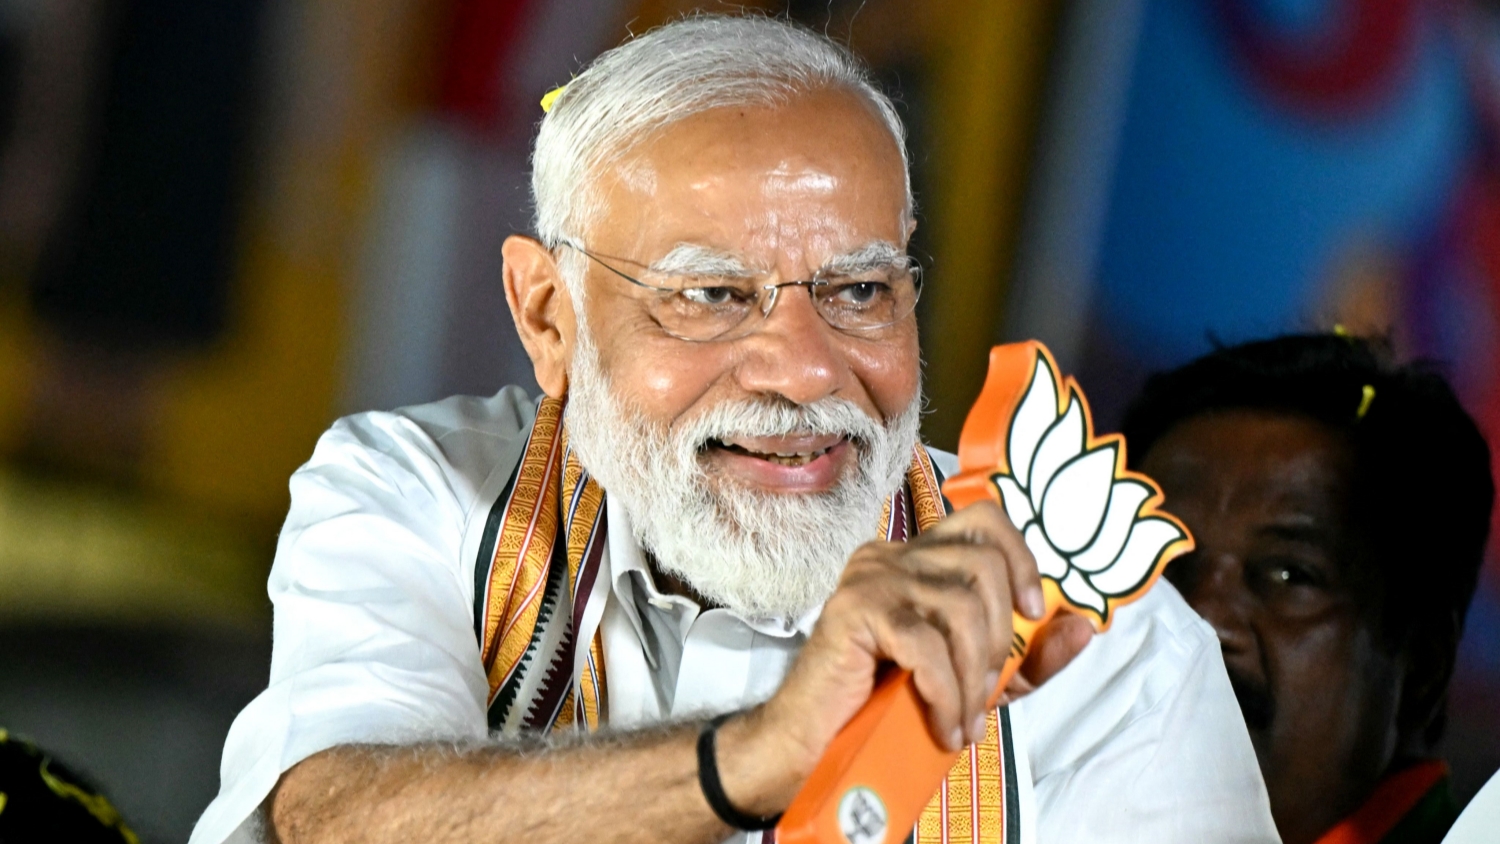 【來論】印度大選莫迪三蟬聯料無懸念